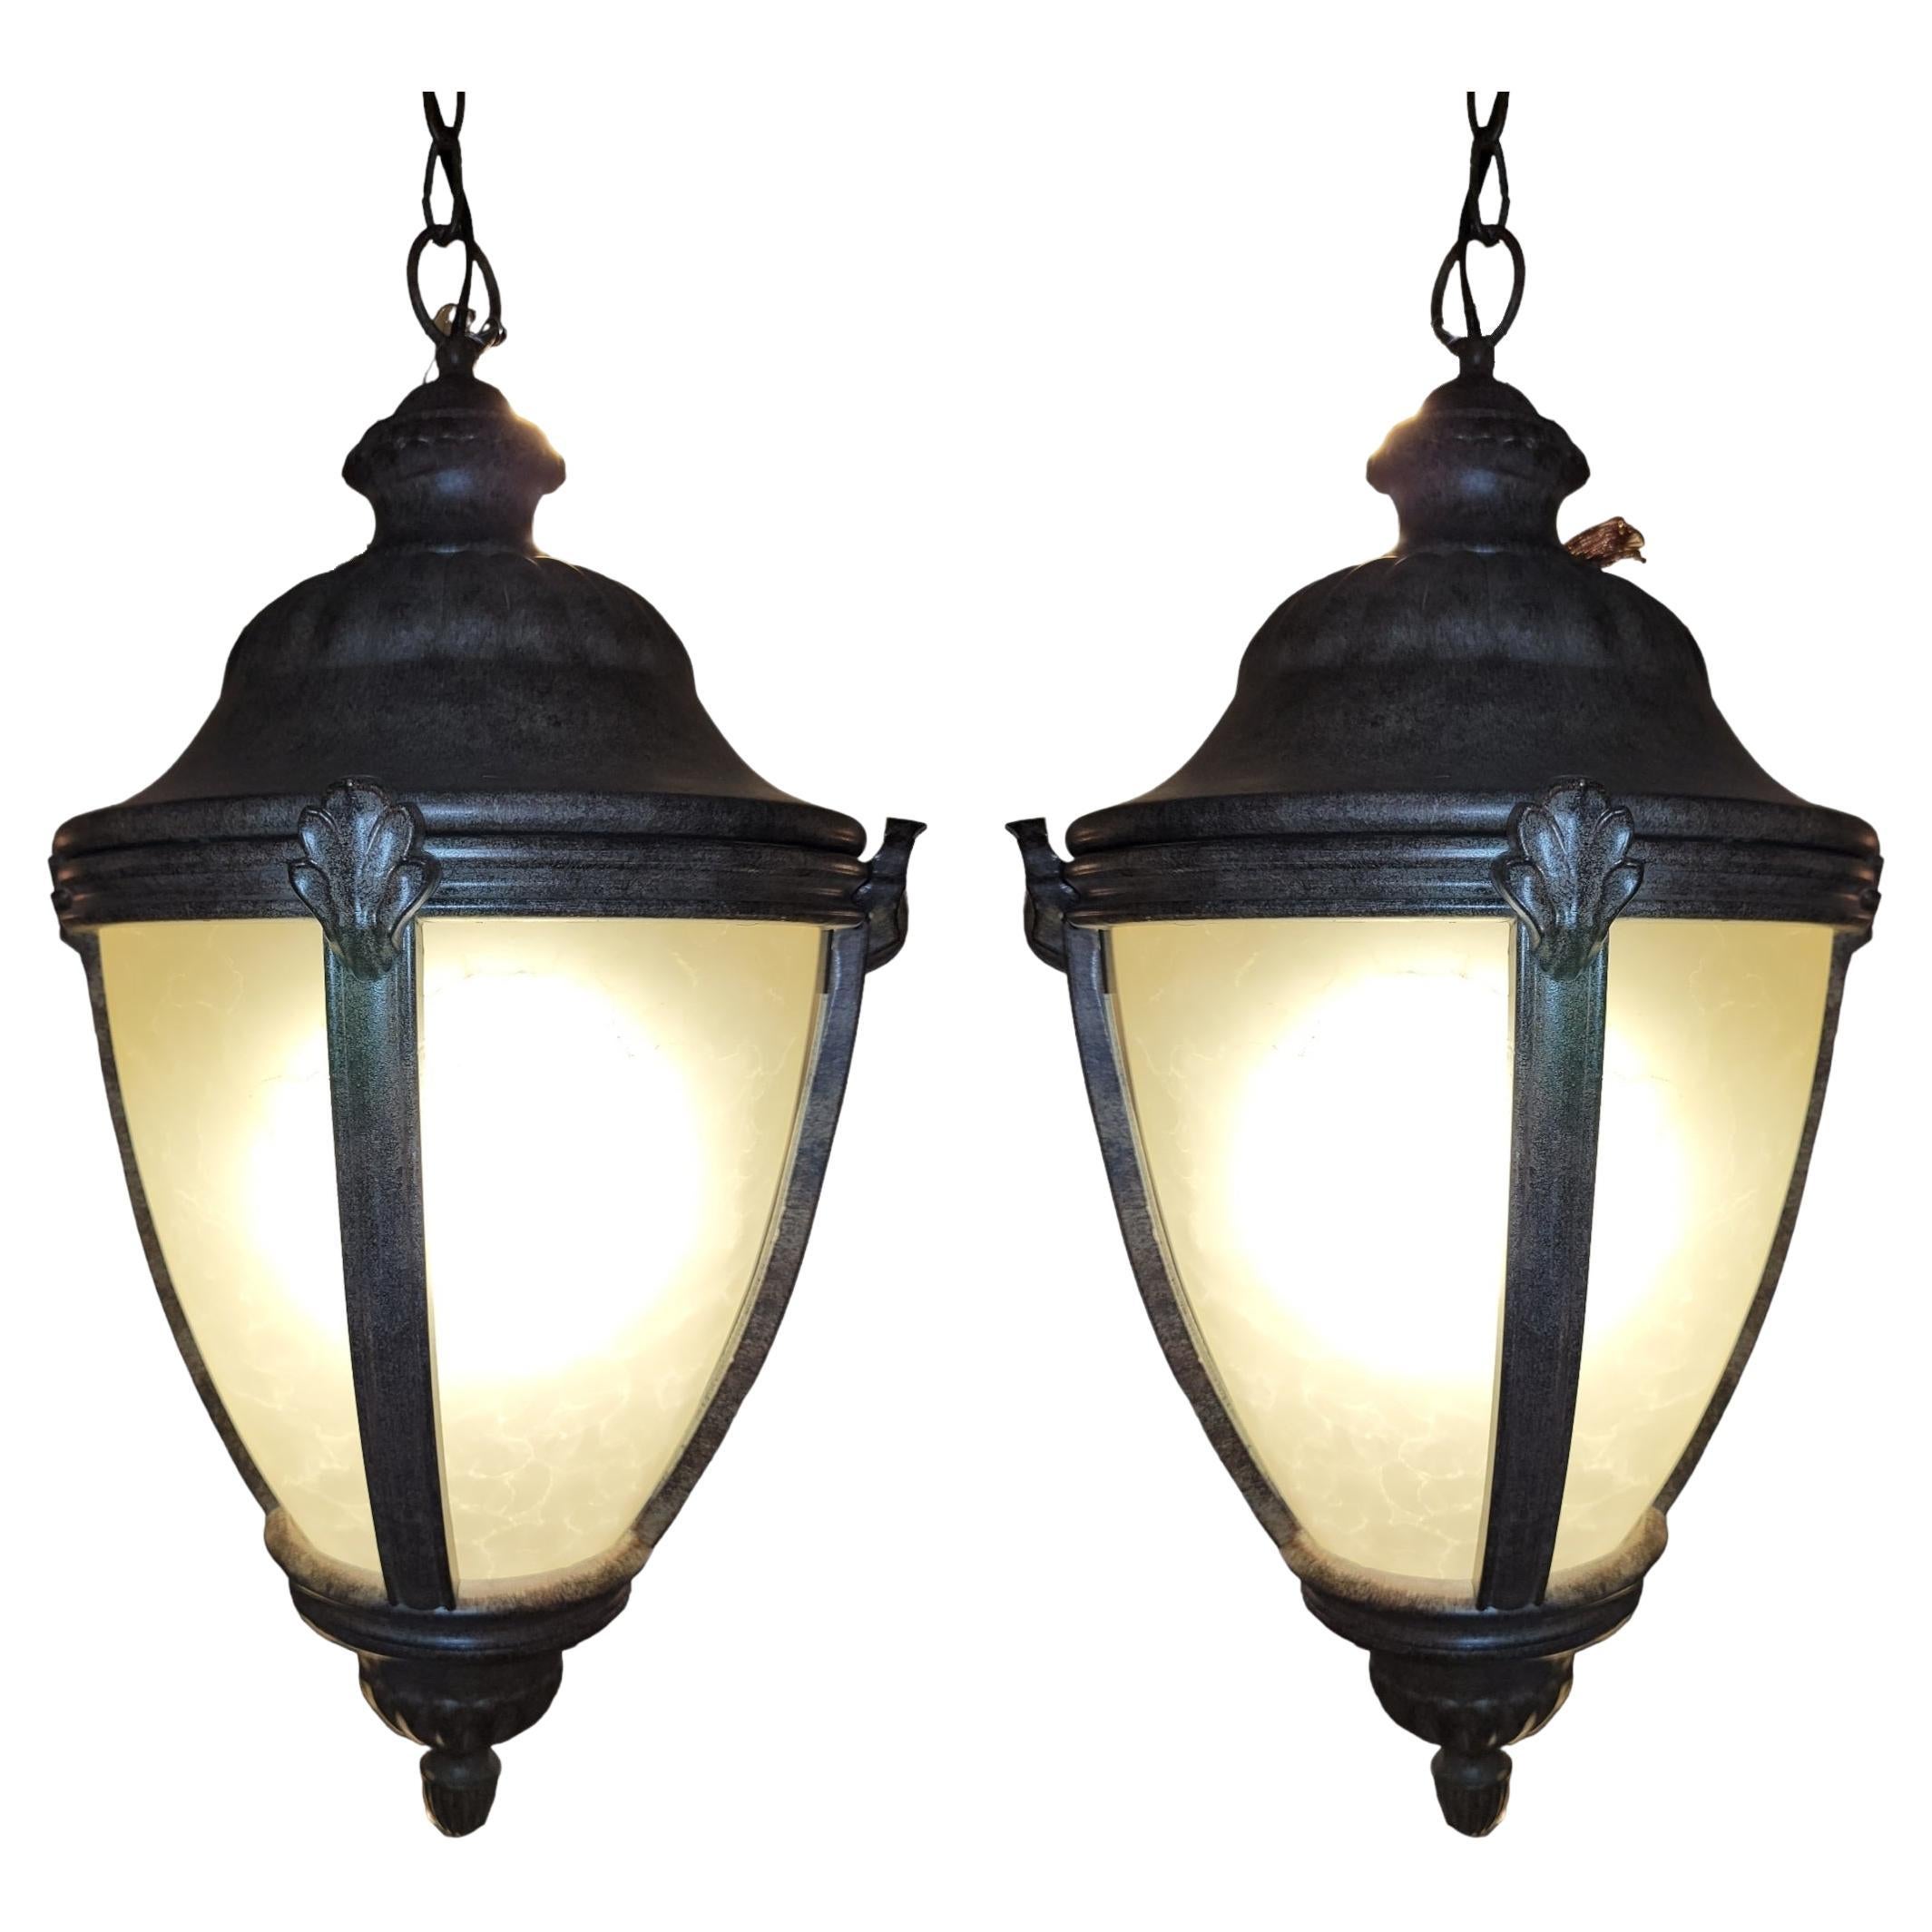 Pair of Modern Hanging Lanterns